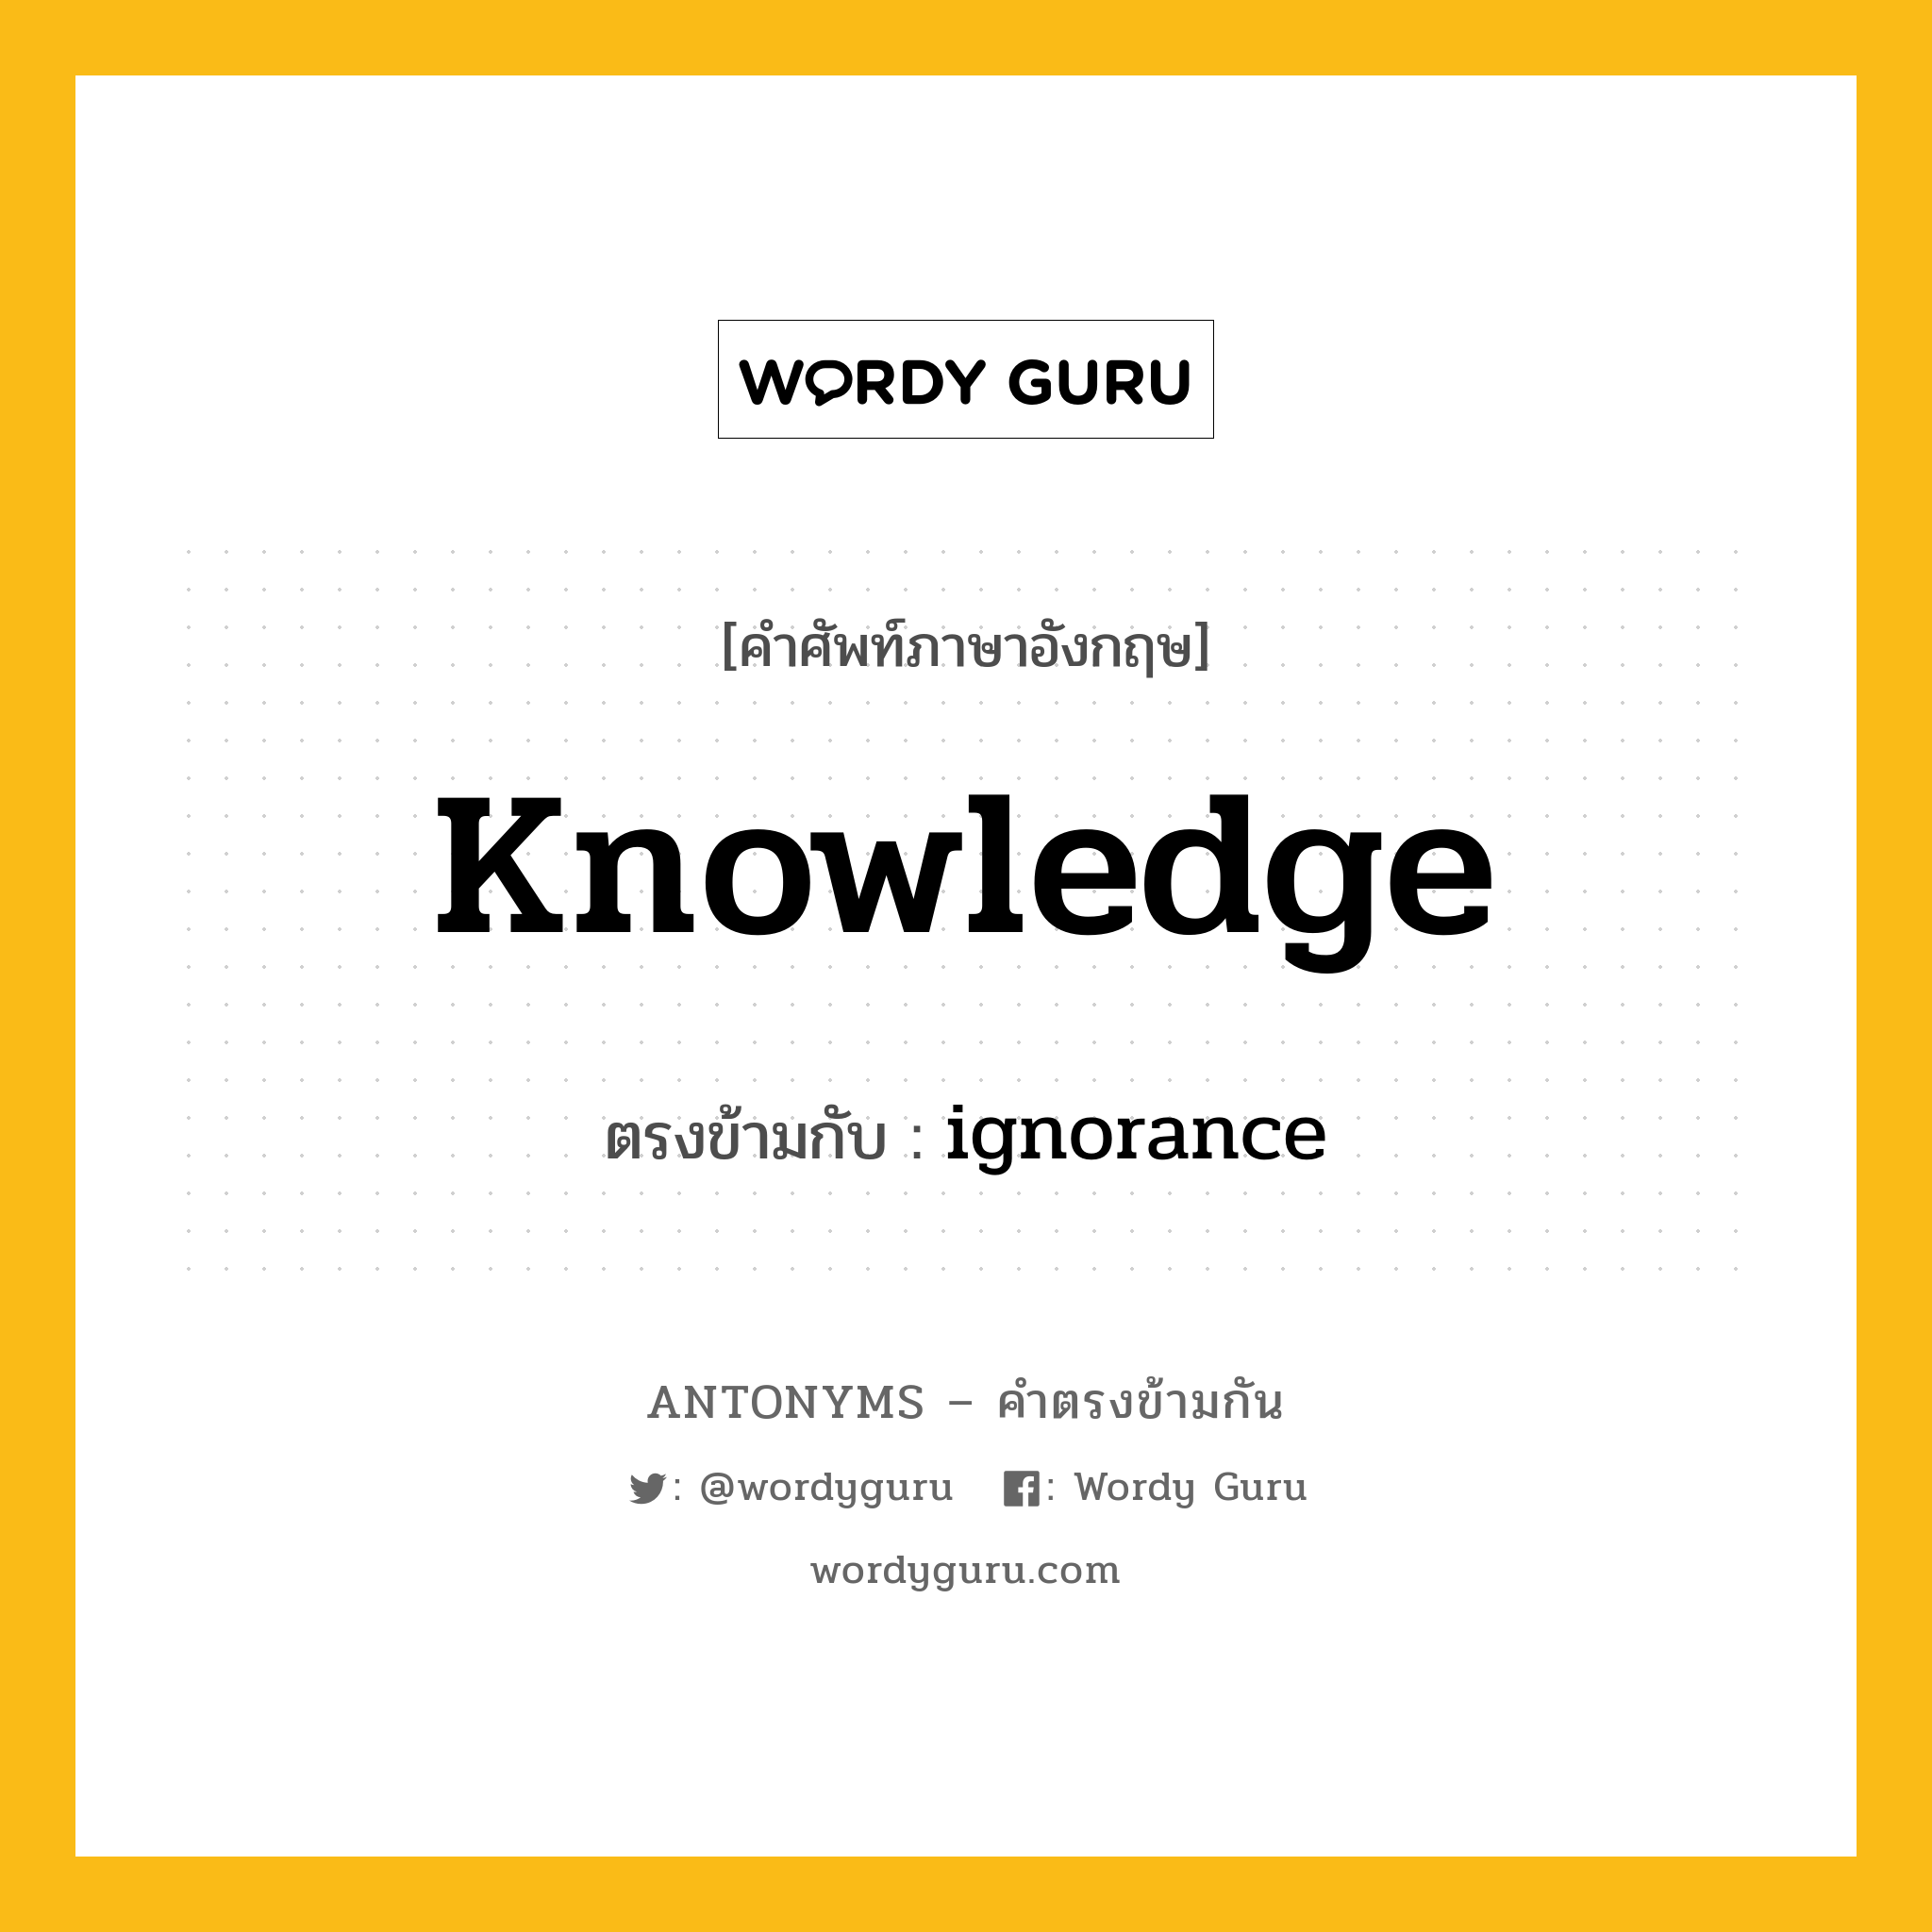 knowledge เป็นคำตรงข้ามกับคำไหนบ้าง?, คำศัพท์ภาษาอังกฤษ knowledge ตรงข้ามกับ ignorance หมวด ignorance